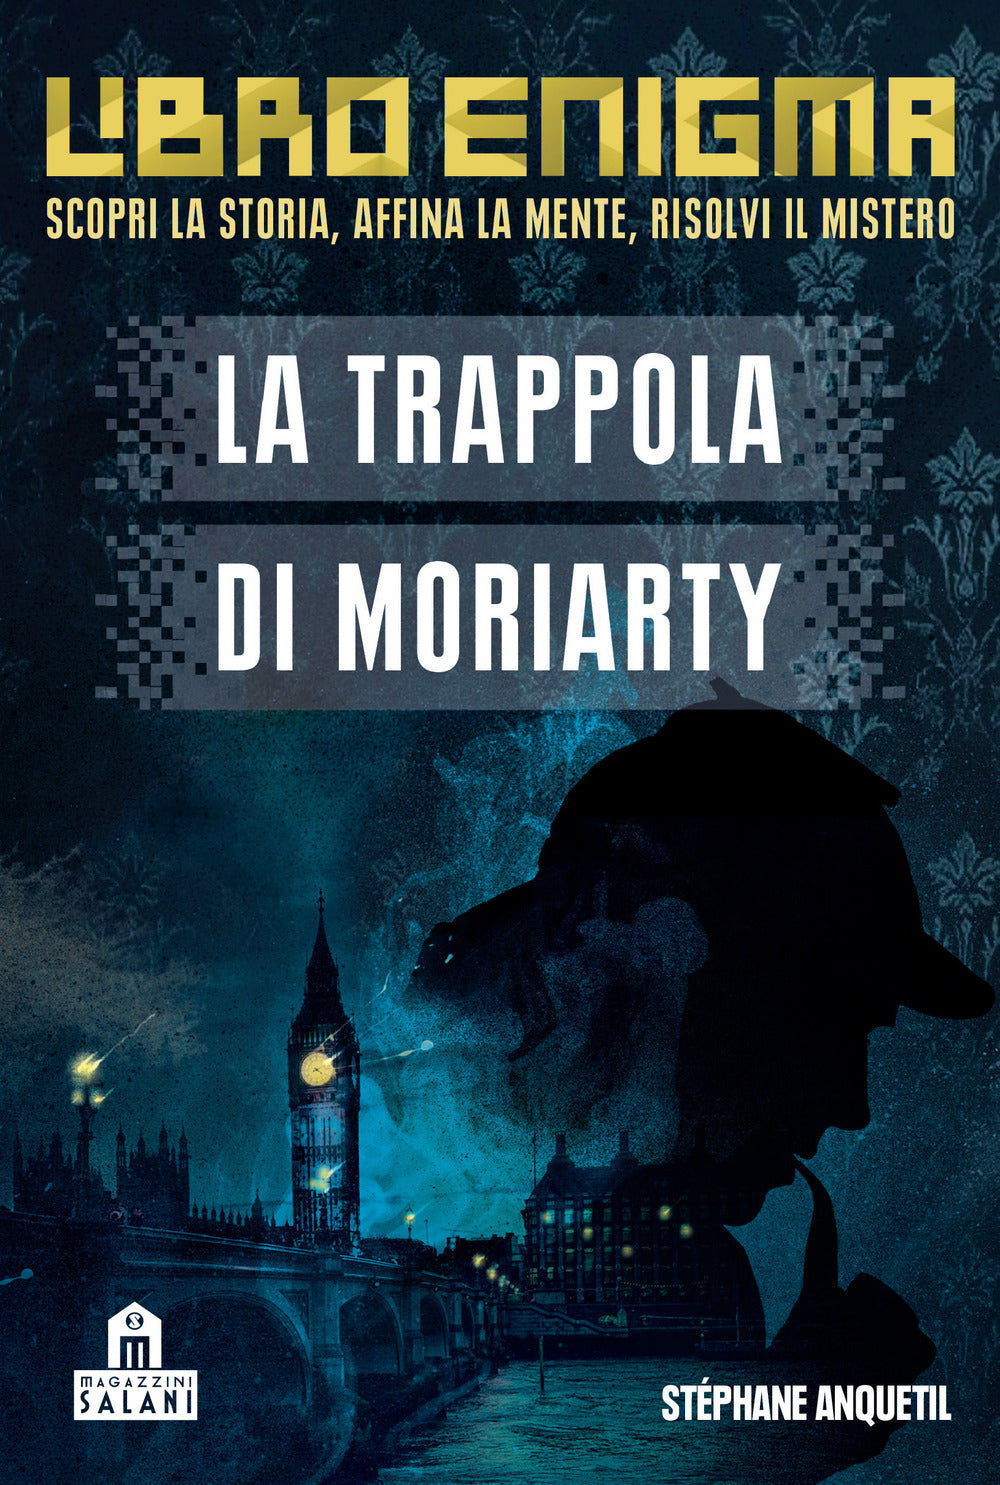 La trappola di Moriarty. Libro enigma.